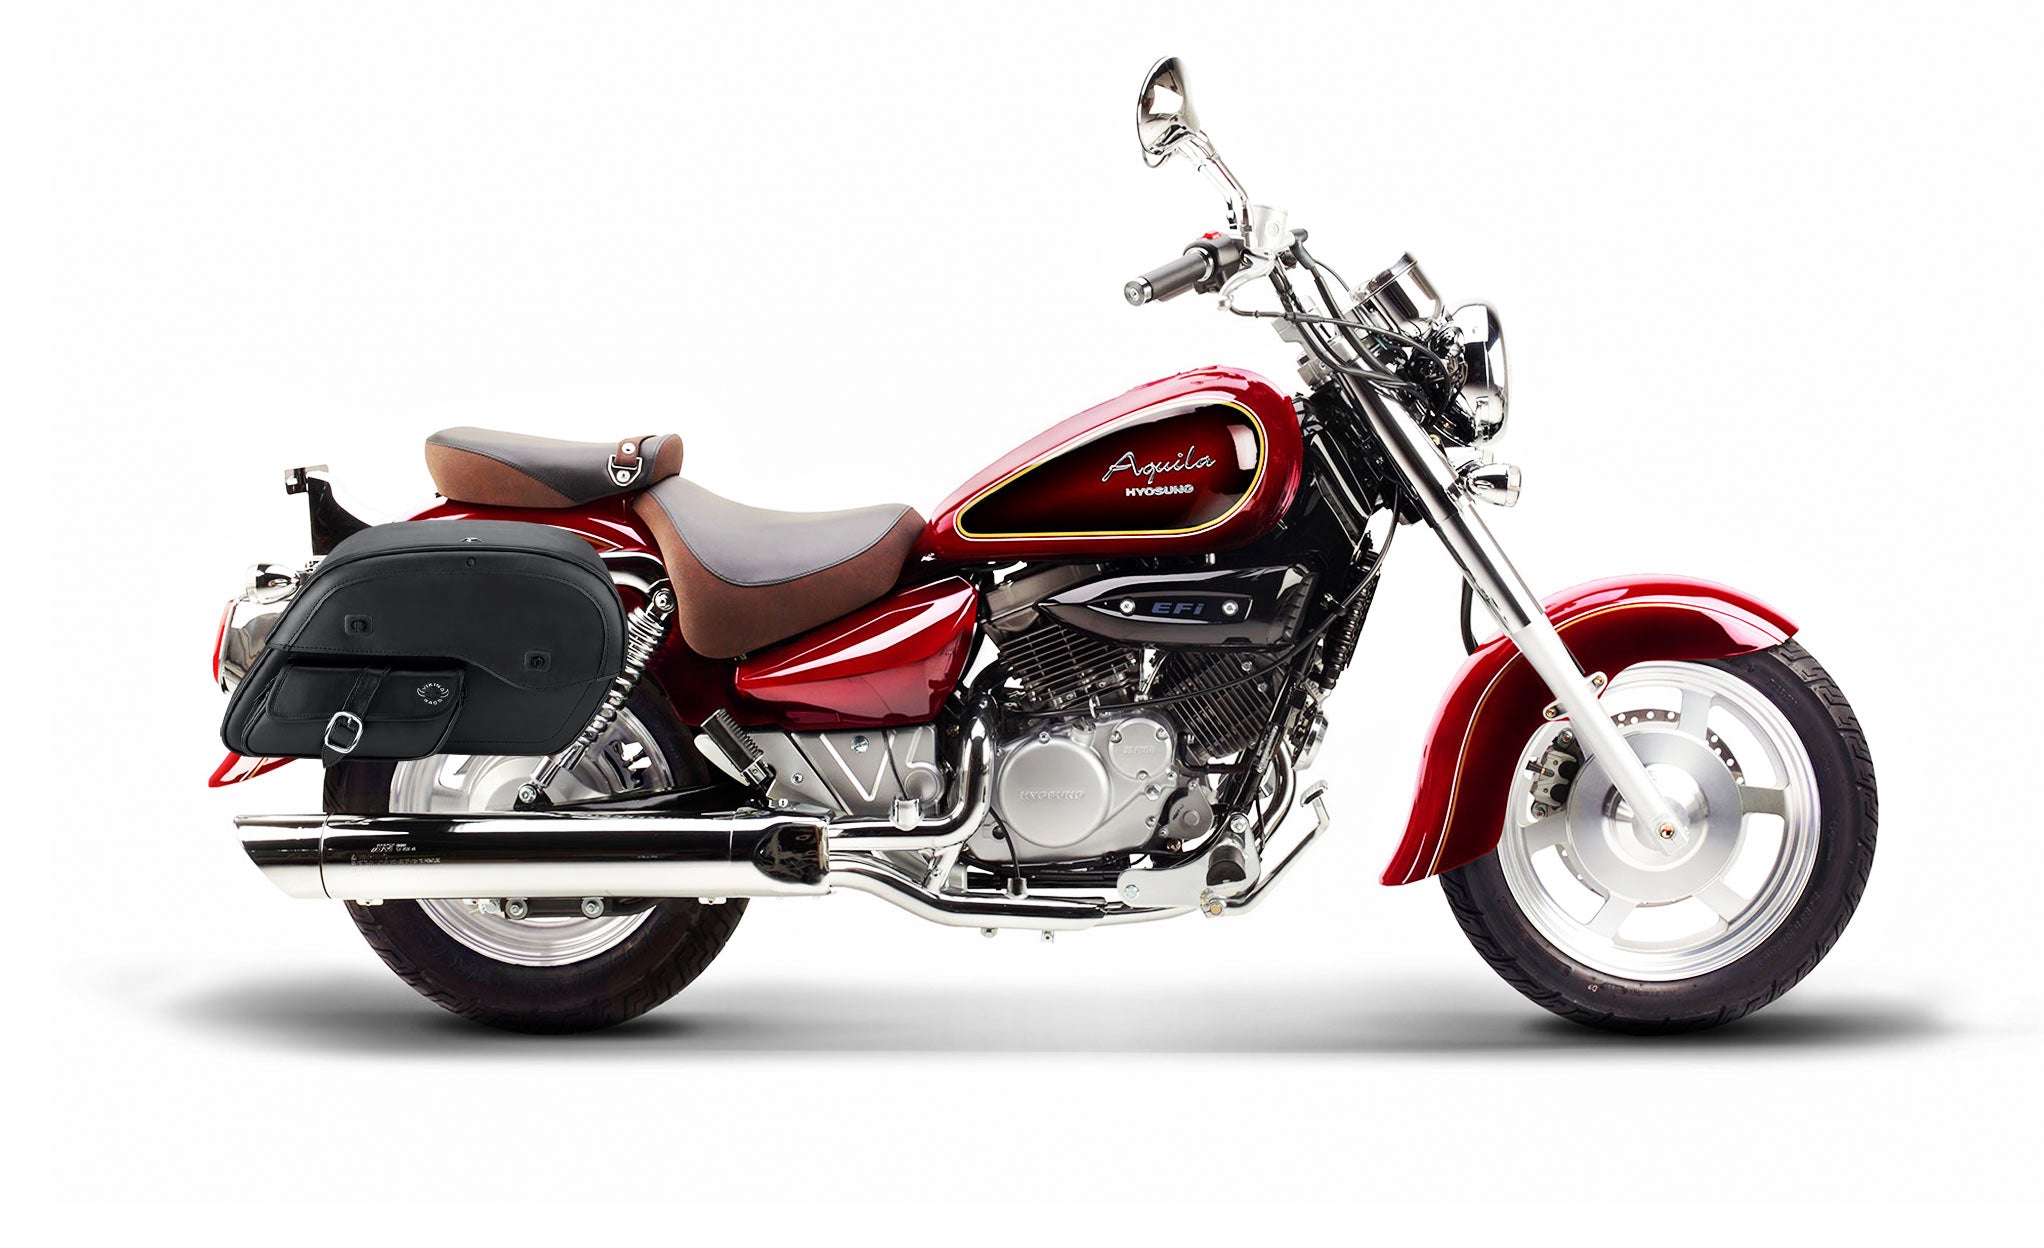 Viking Essential Side Pocket Large Hyosung Aquila Gv 250 Leather Motorcycle Saddlebags on Bike Photo @expand